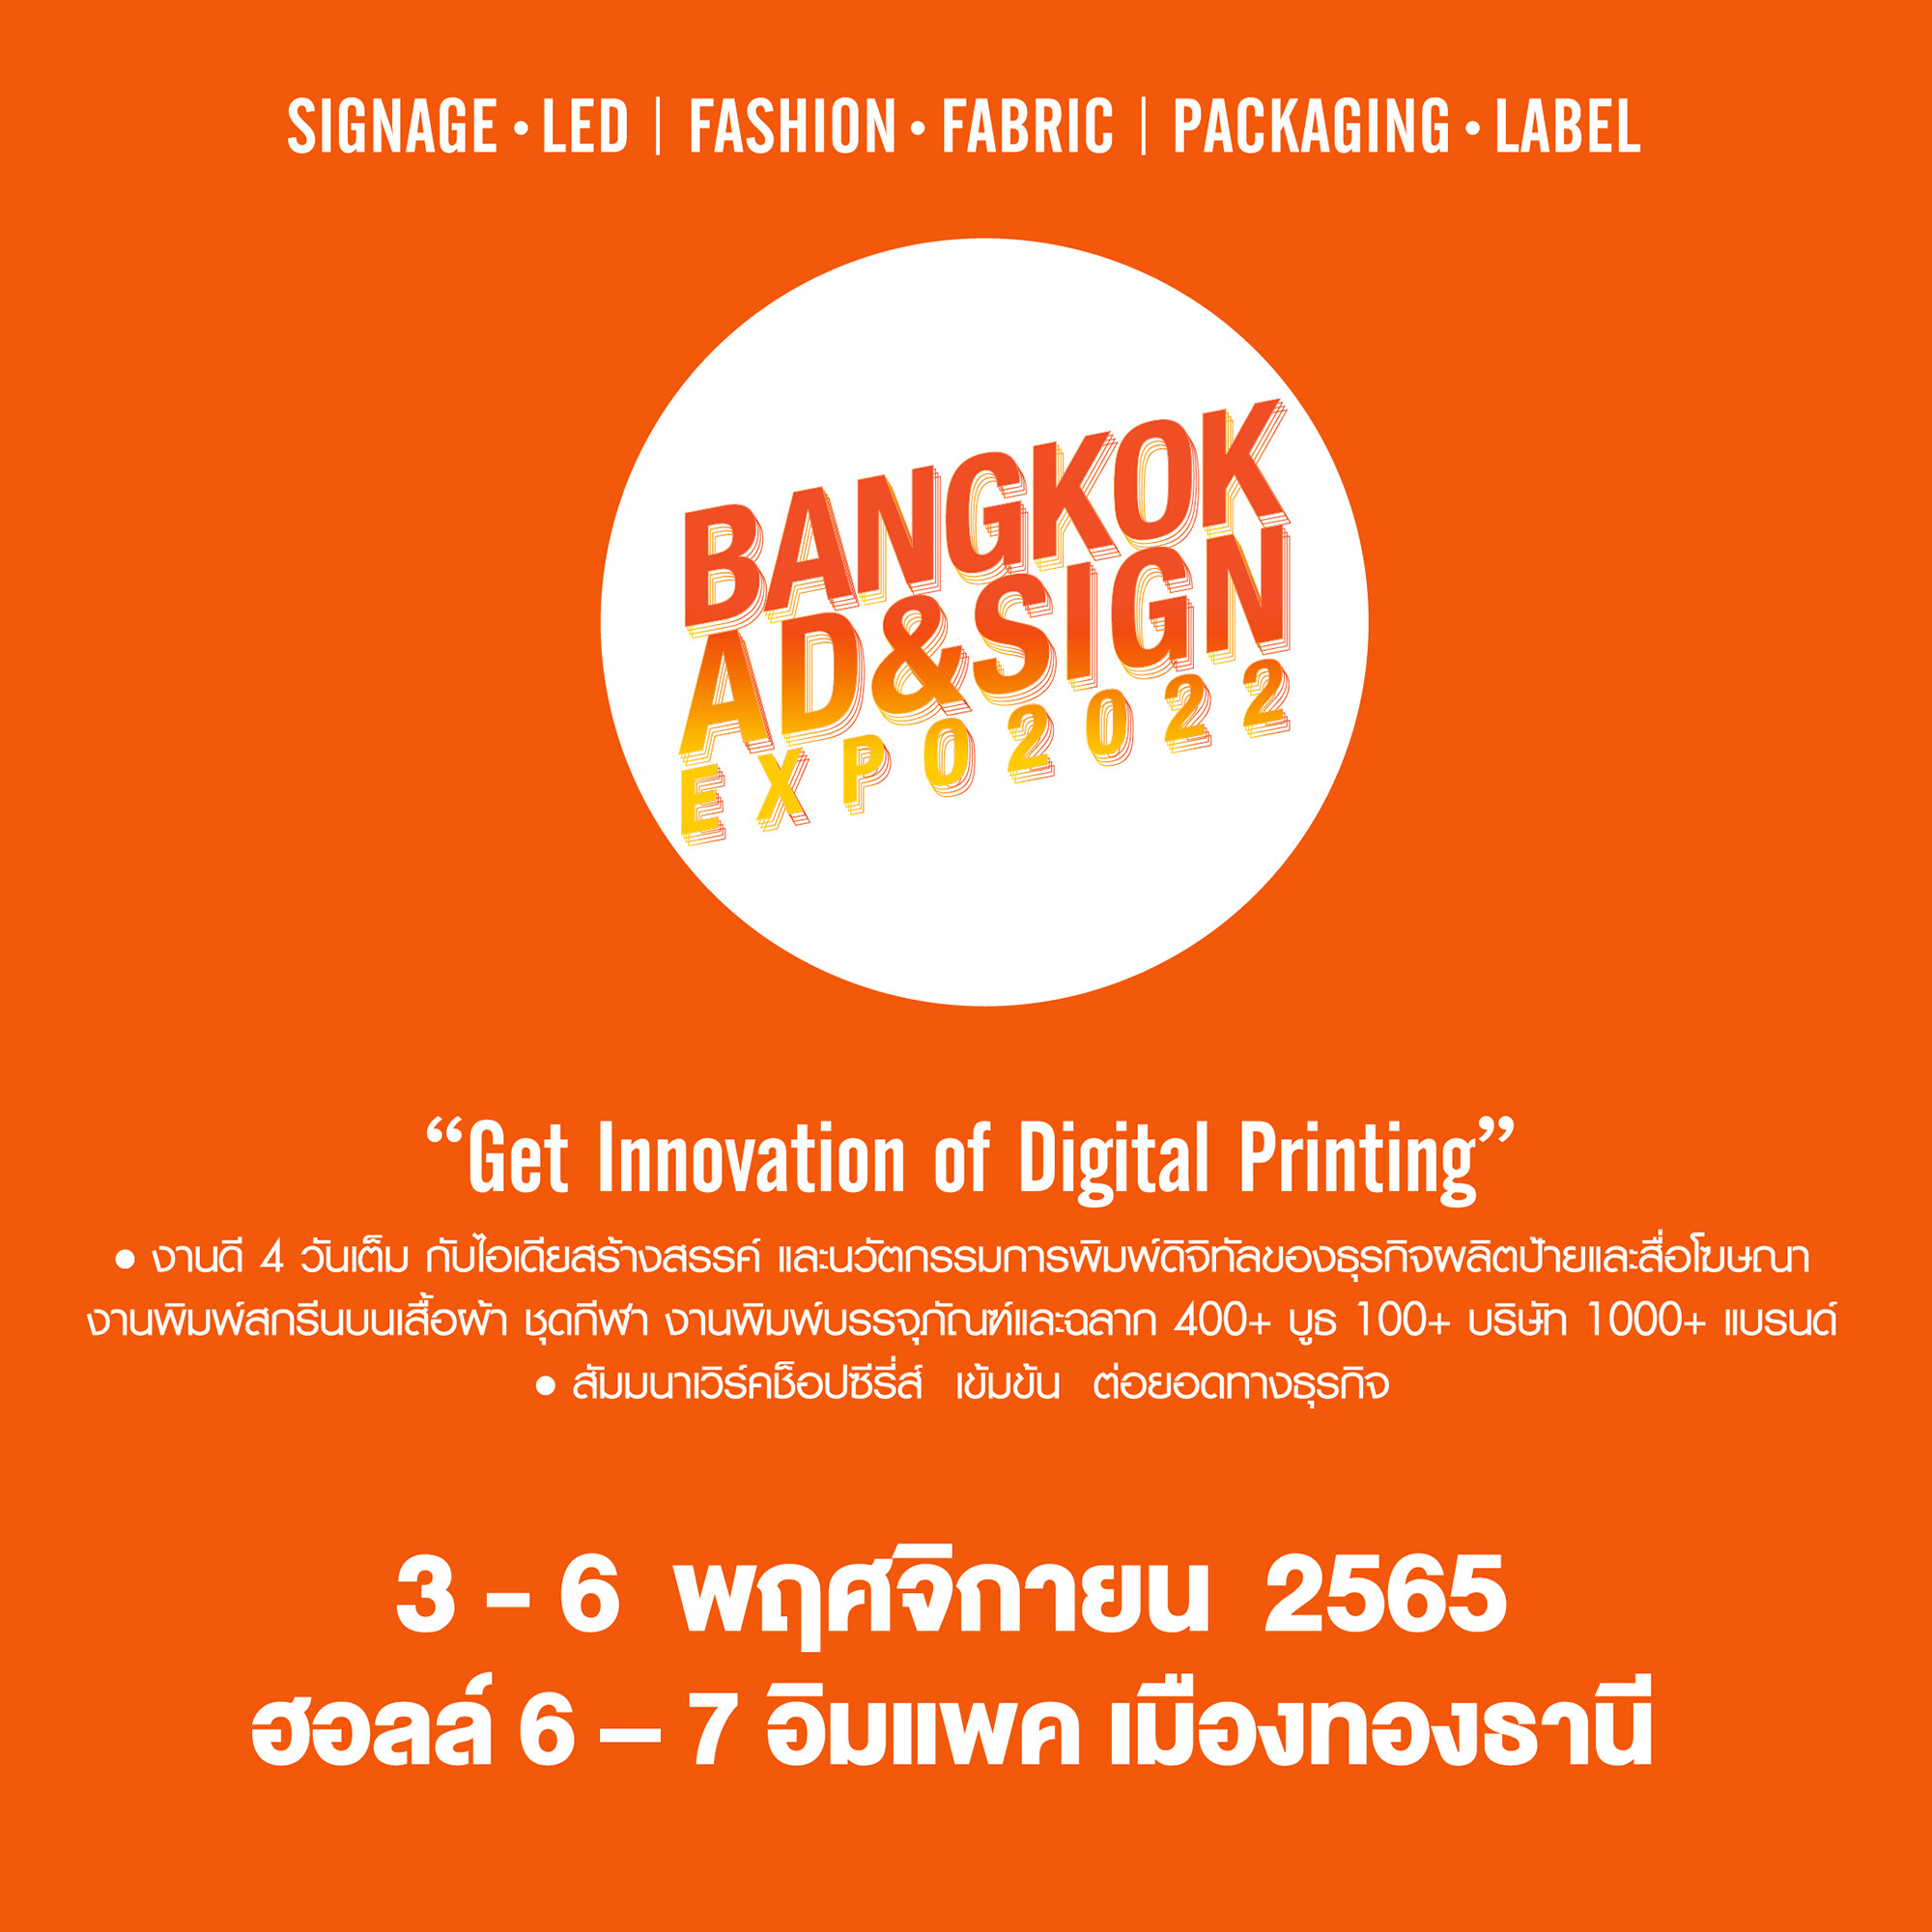 "BANGKOK AD &amp; SIGN EXPO 2022" งานใหญ่แห่งปี! ครบเครื่องเรื่องนวัตกรรมการผลิตงานป้าย สื่อโฆษณา และดิจิทัลพริ้นท์ติ้ง 3-6 พฤศจิกายนนี้ ที่อิมแพ็ค เมืองทองธานี